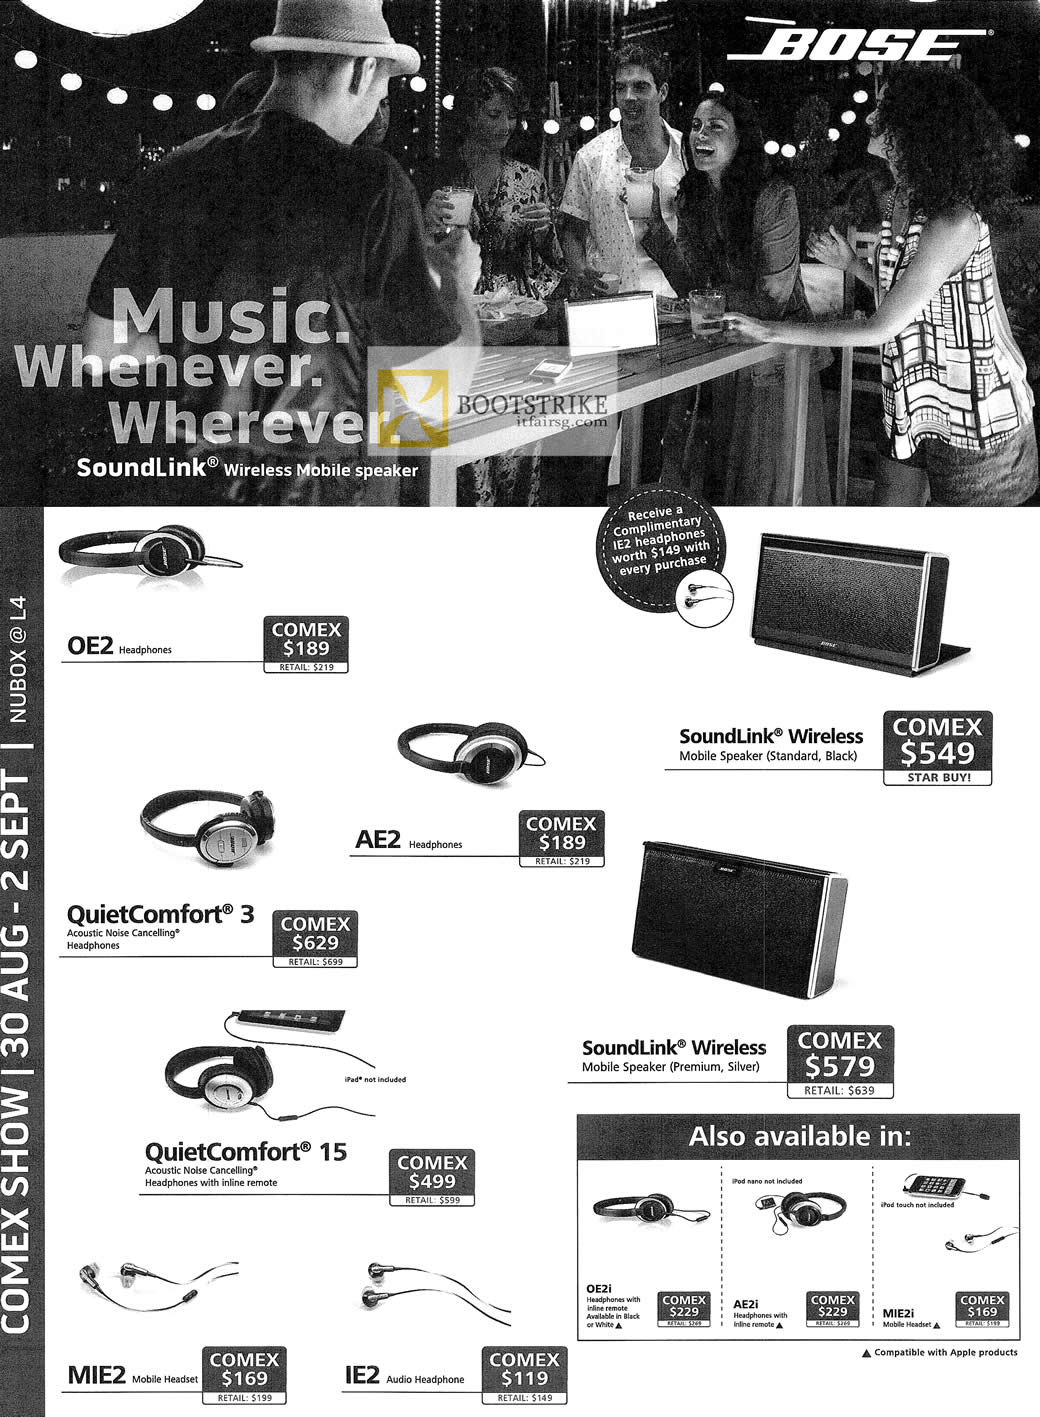 COMEX 2012 price list image brochure of Newstead Nubox Bose Headphones OE2 AE2, QuietComfort 3, 15, IE2, MIE2, SoundLink Wireless Speakers, AE2